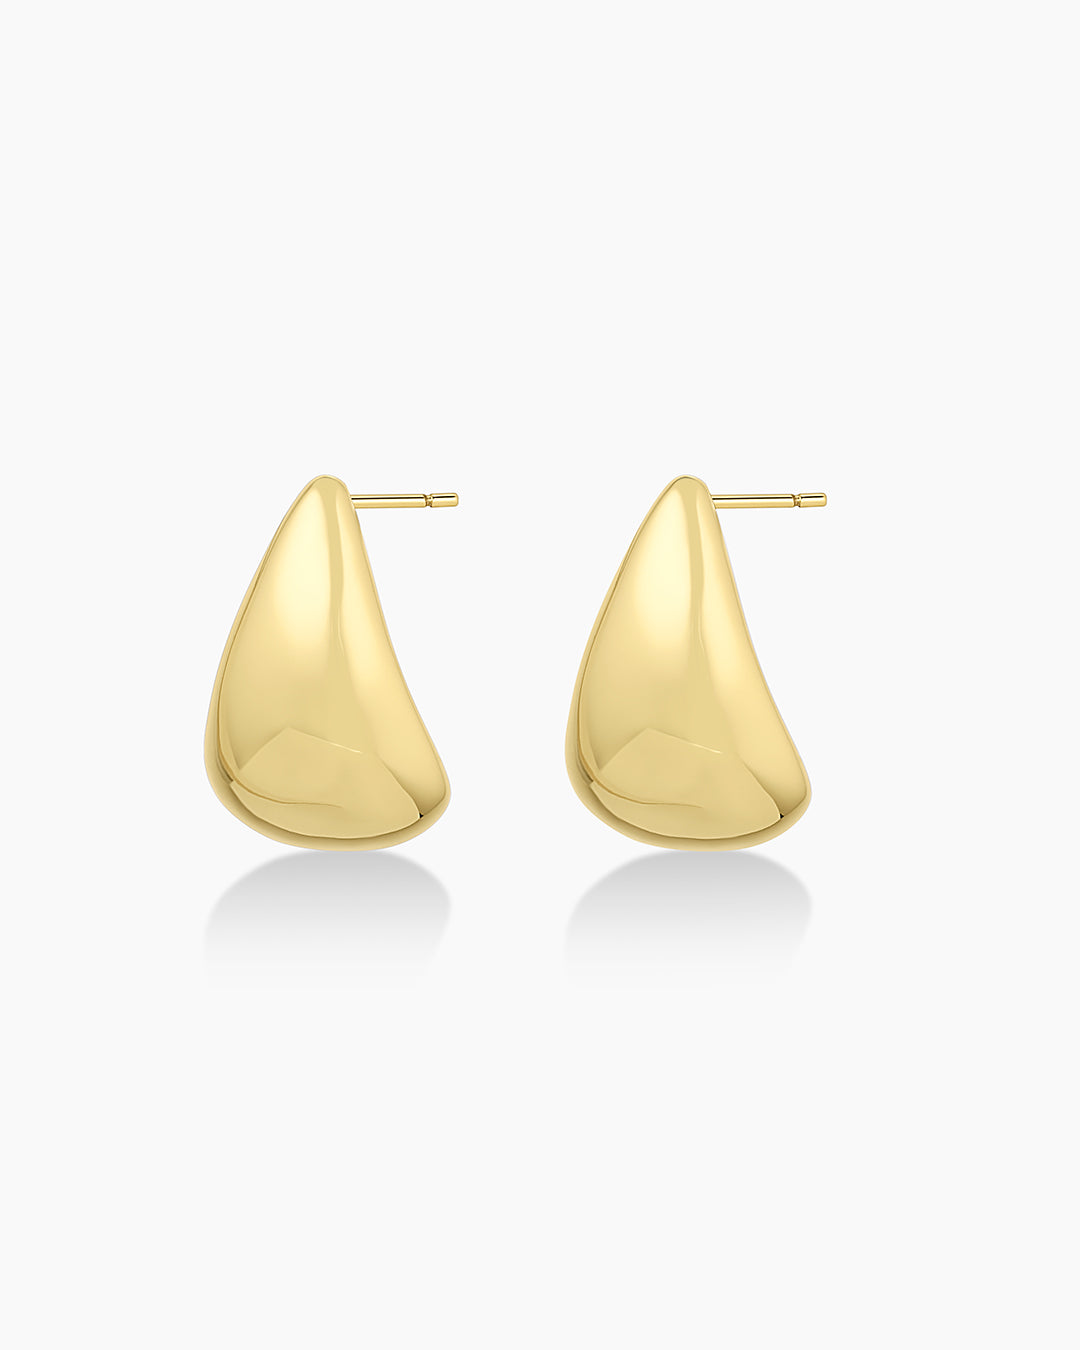 Stud Earrings: Buy Small Stone Stud Earrings for Women & Girls Online